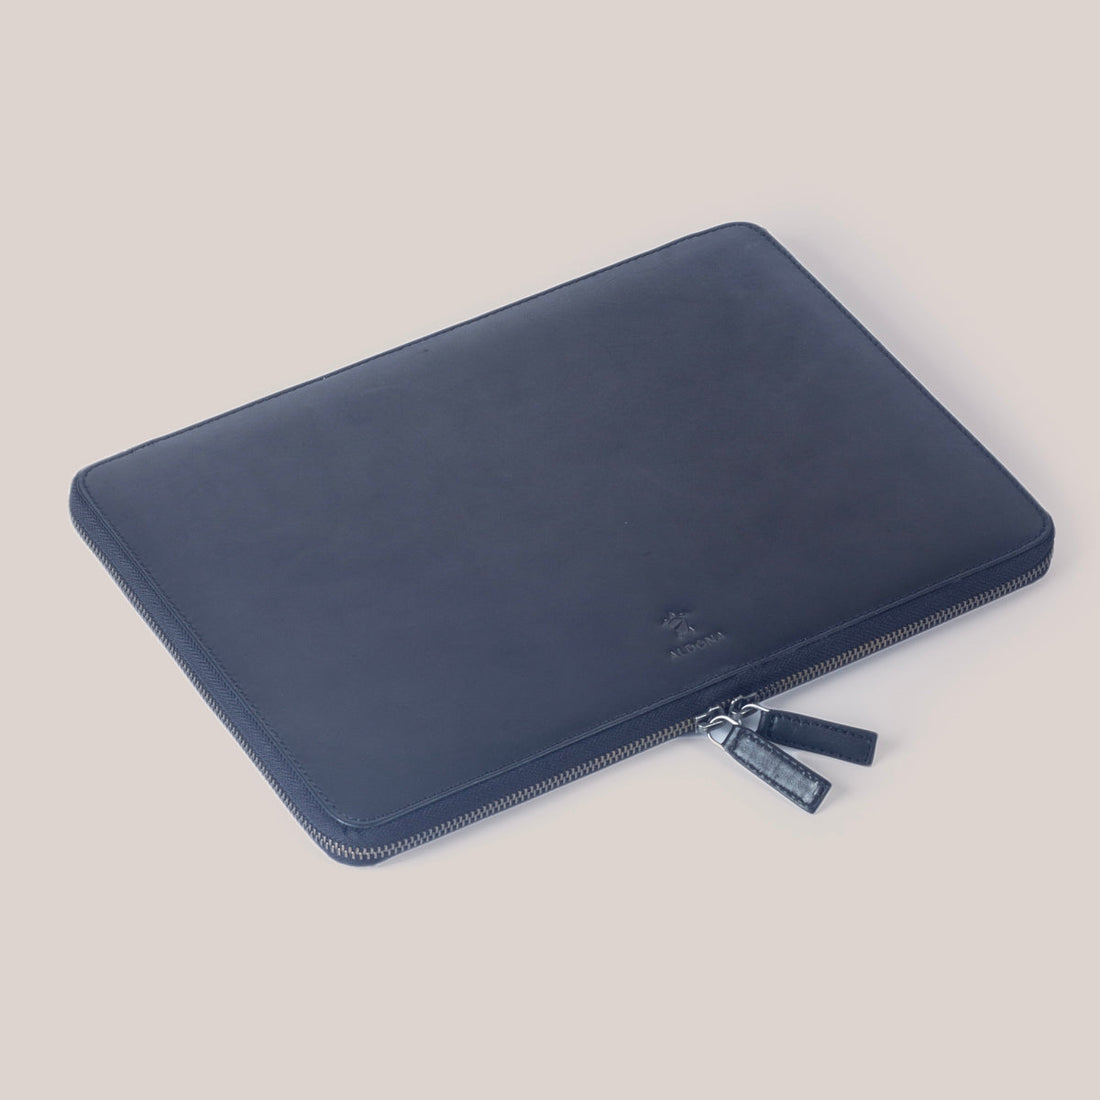 DELL XPS 17 Zippered Laptop Case - Cognac